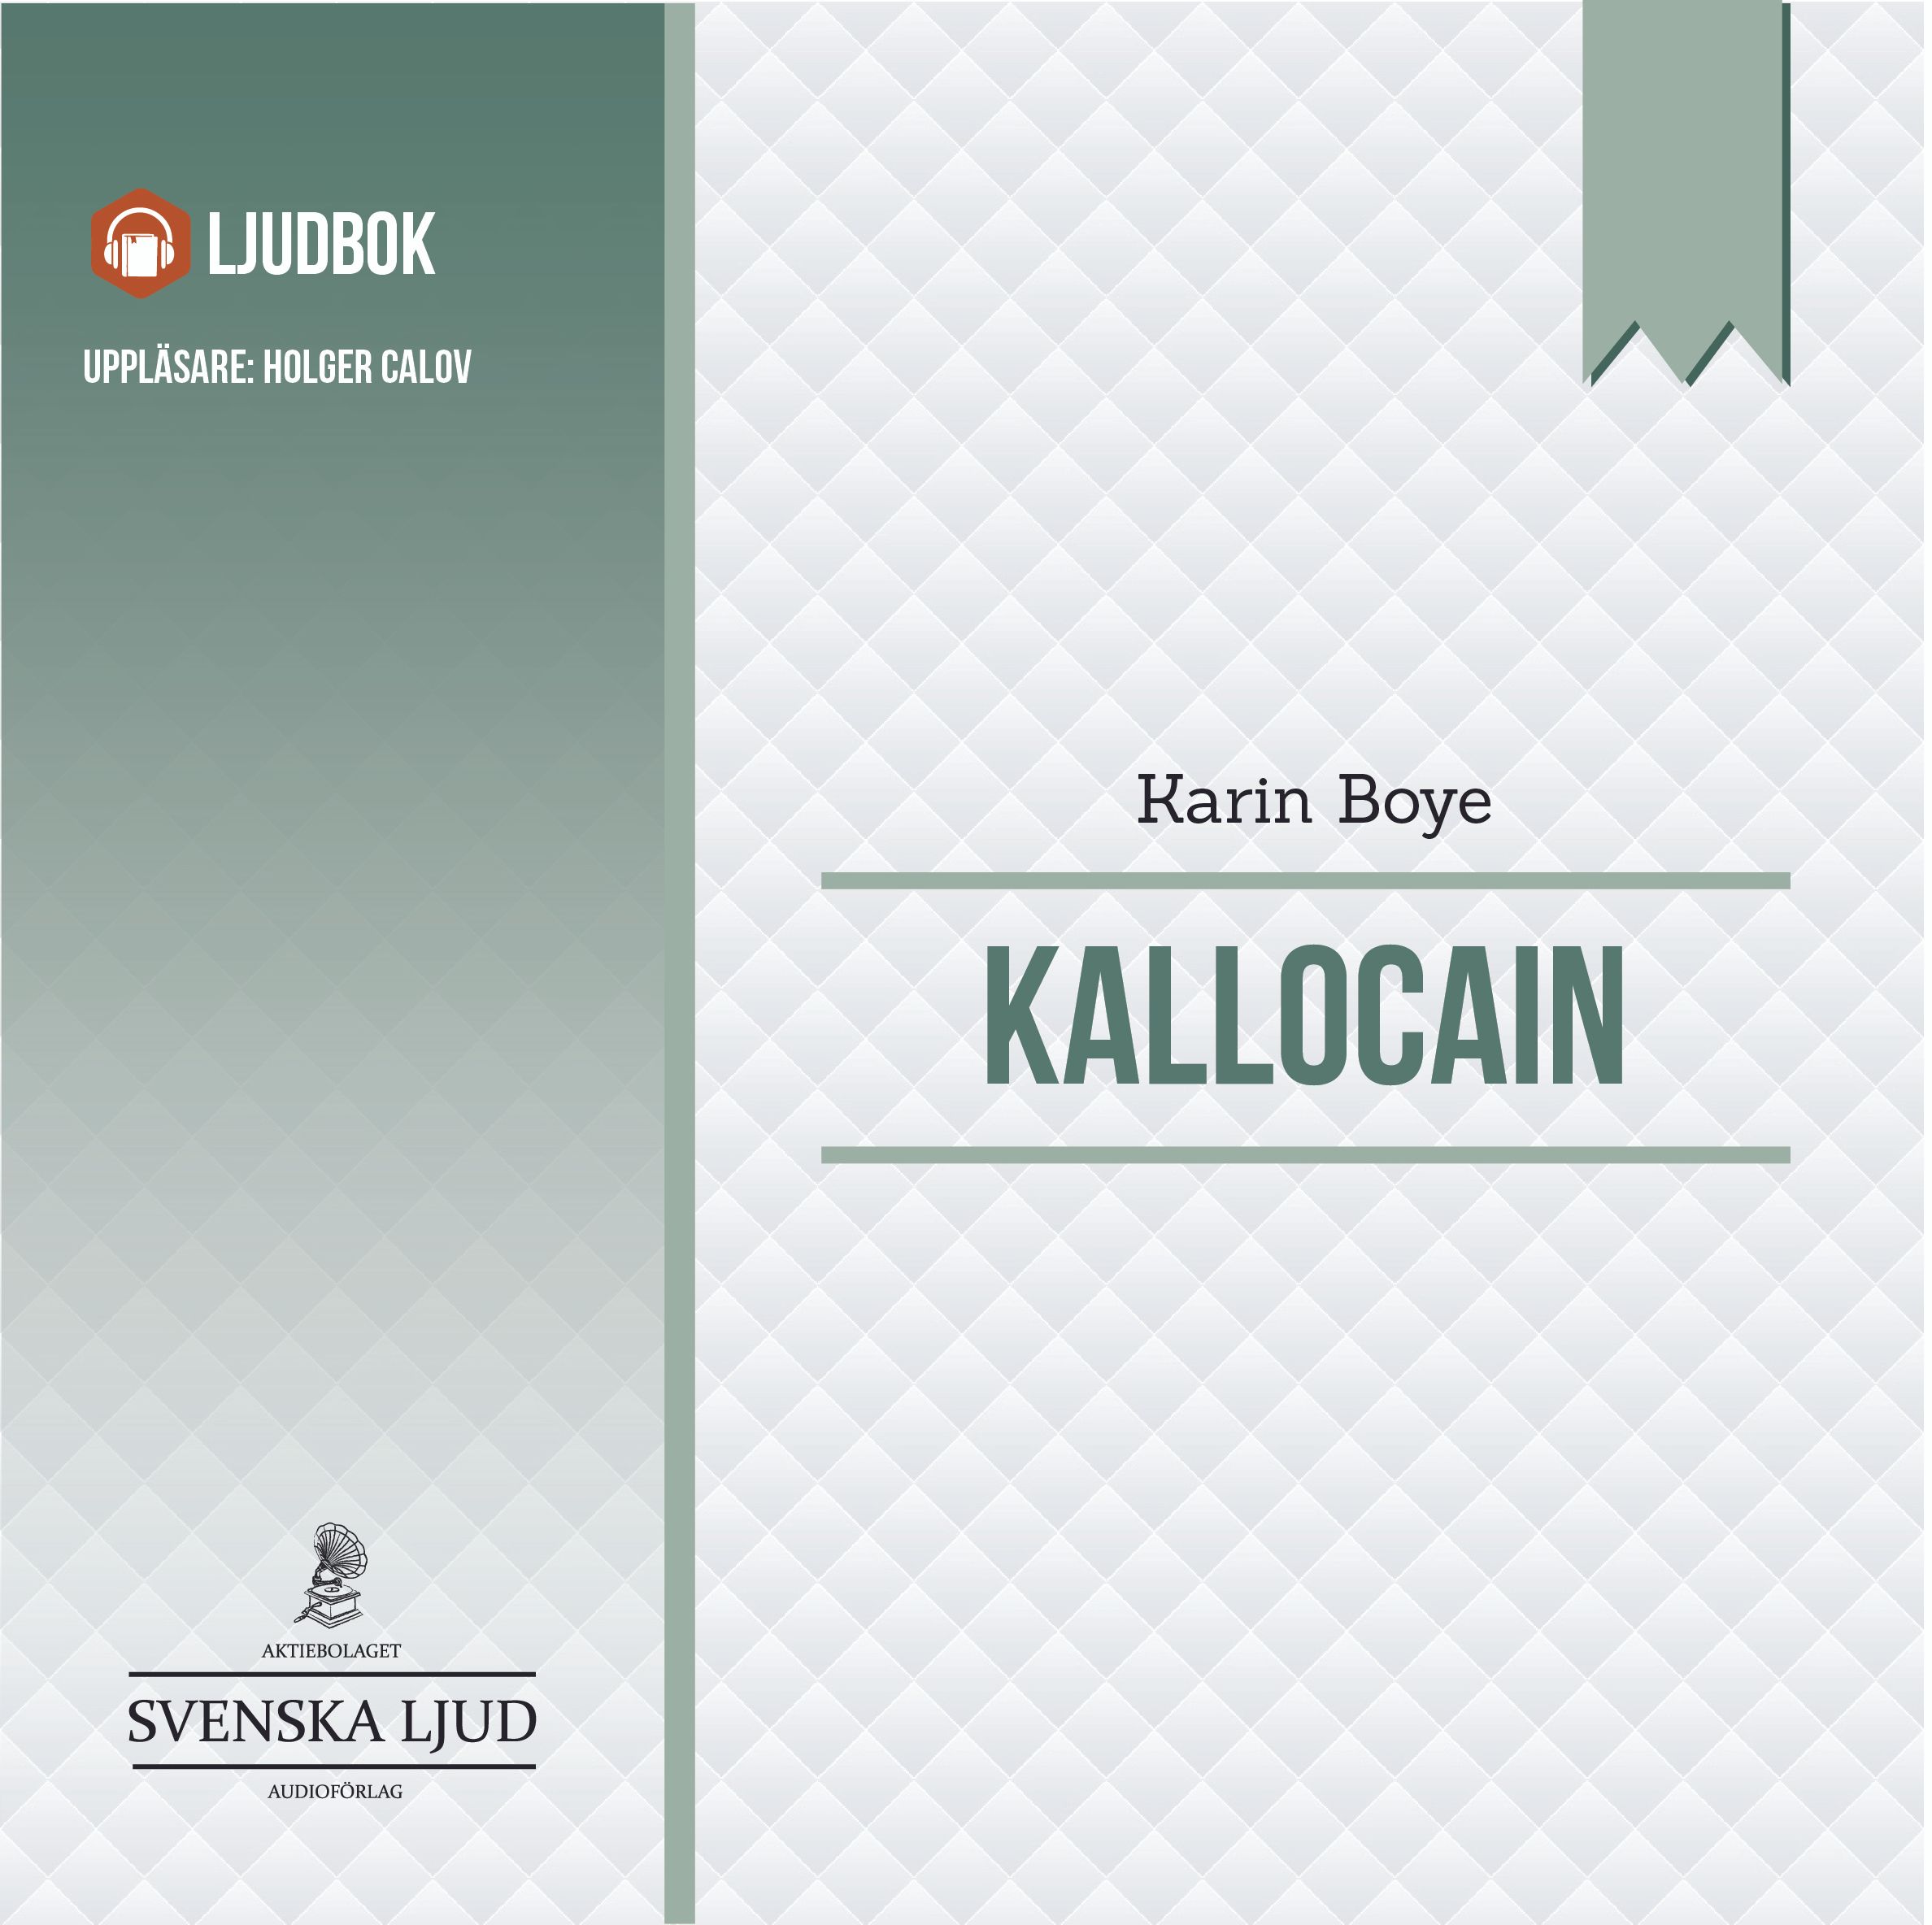 Kallocain, ljudbok av Karin Boye